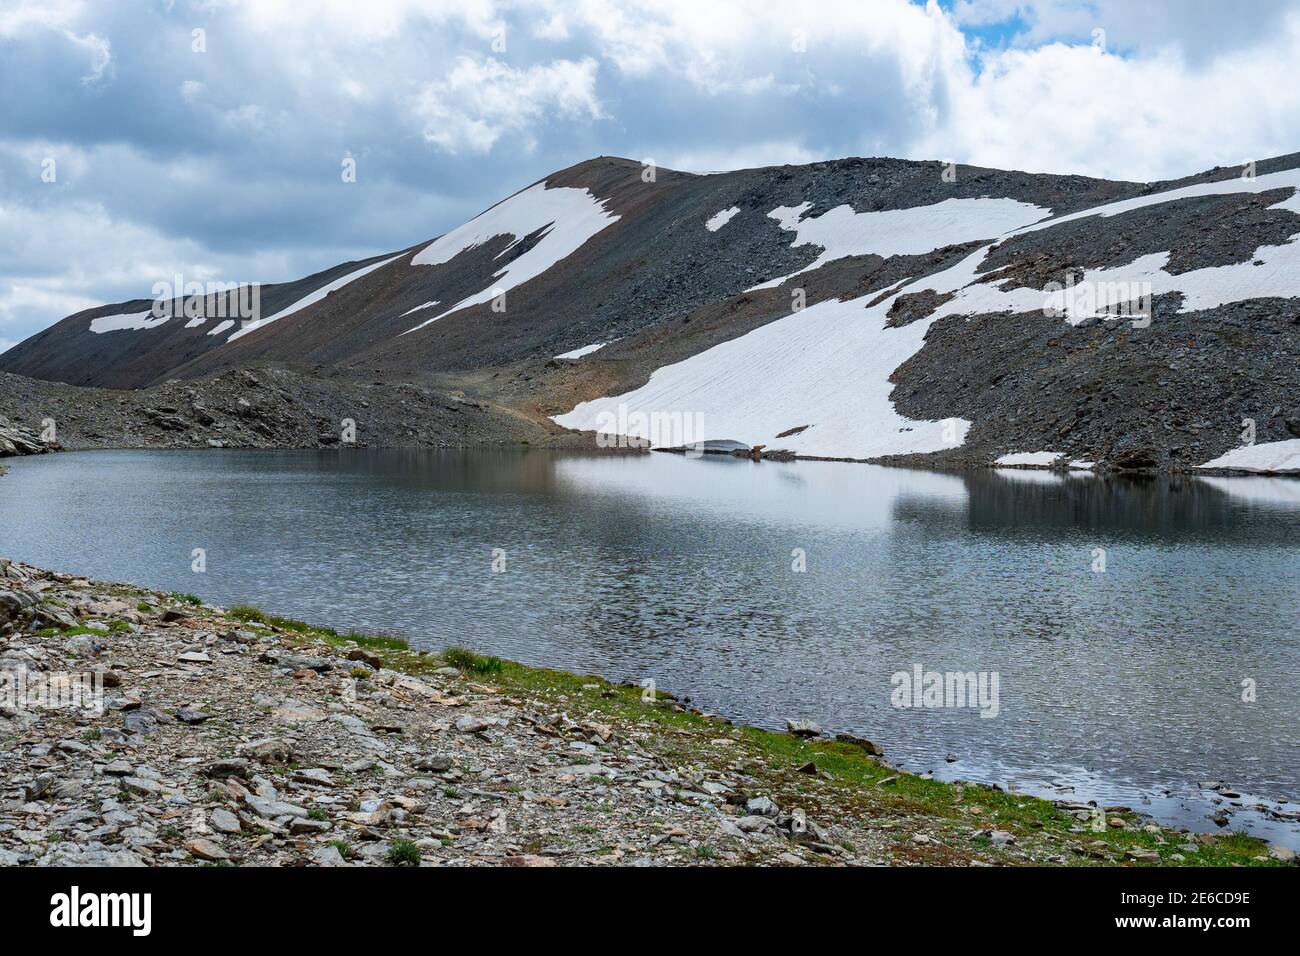 Einsamer Laghetto di Fedaria - ein versteckter Alpensee Die schweizerisch-italienische Grenze Stockfoto